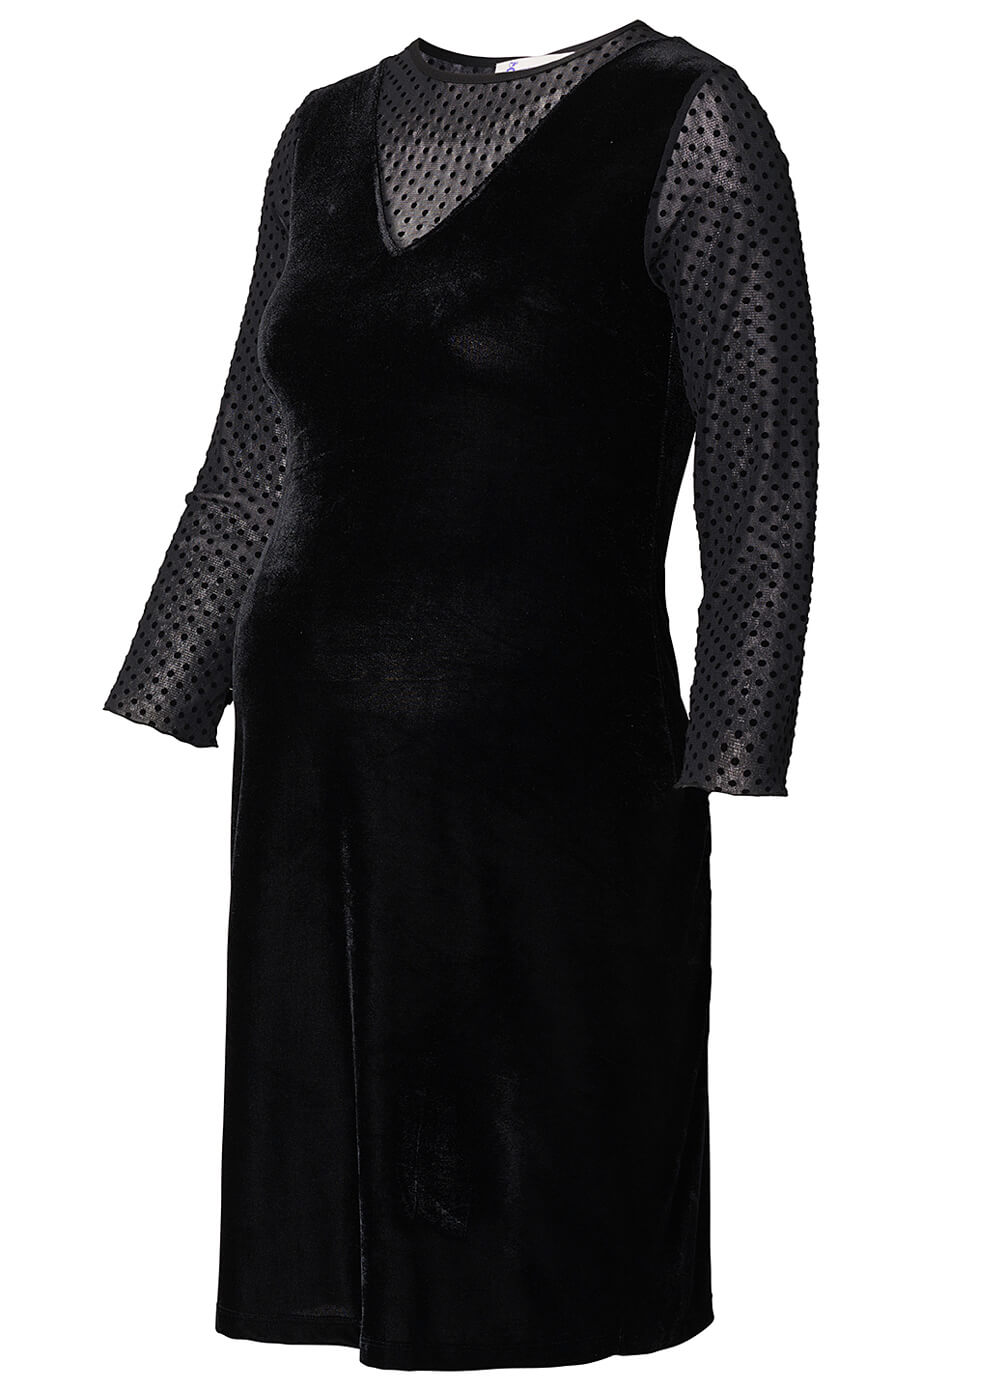 Mesh Dot Velvet Maternity Cocktail Dress in Black by Queen mum